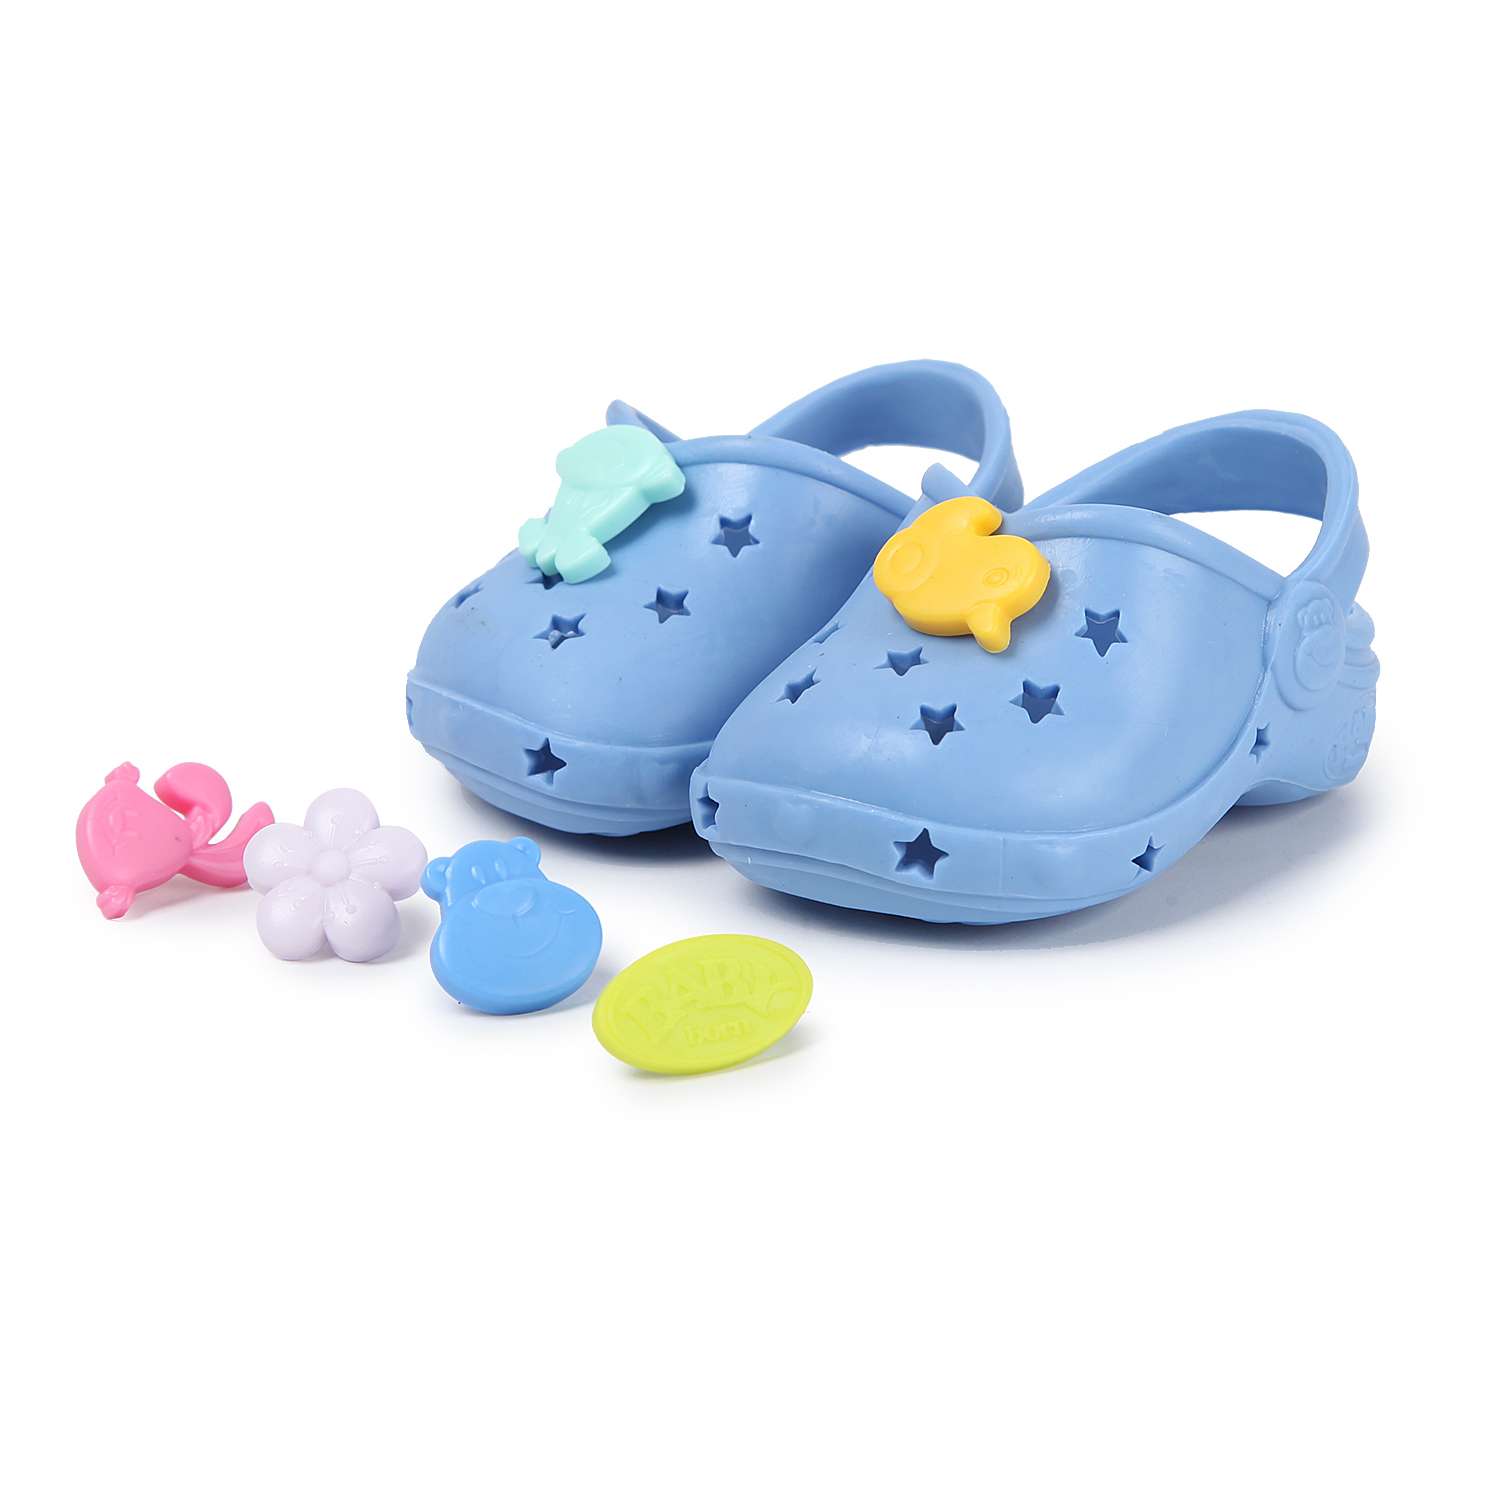 Обувь для куклы Zapf Creation Baby born Сандали фантазийные Синие 824-597 824-597 - фото 1